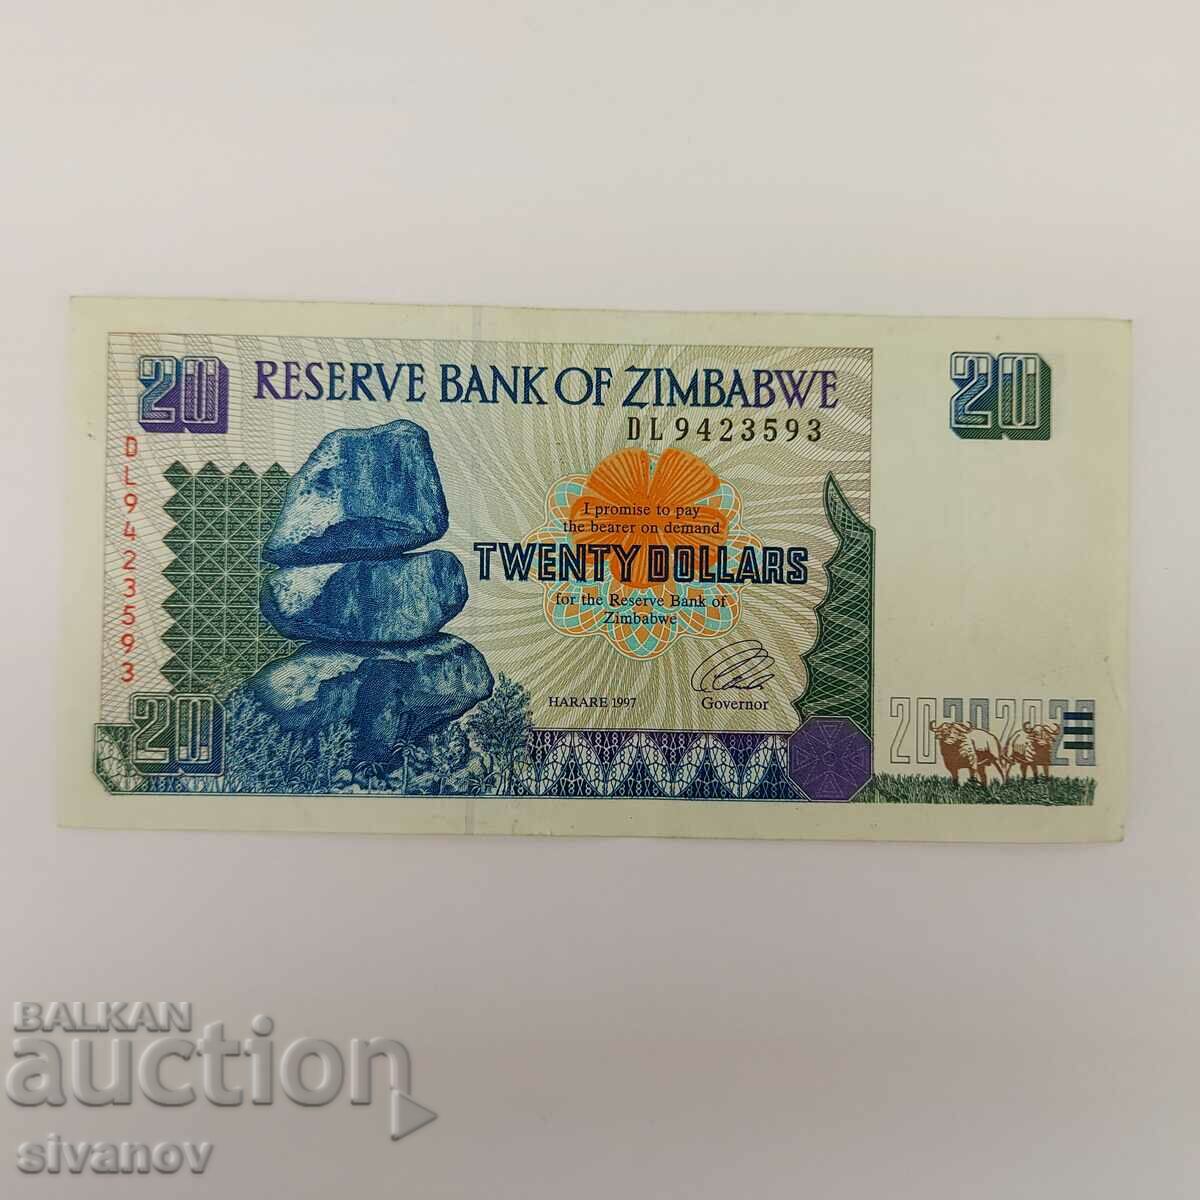 Zimbabwe 20 USD 1997 # 3916